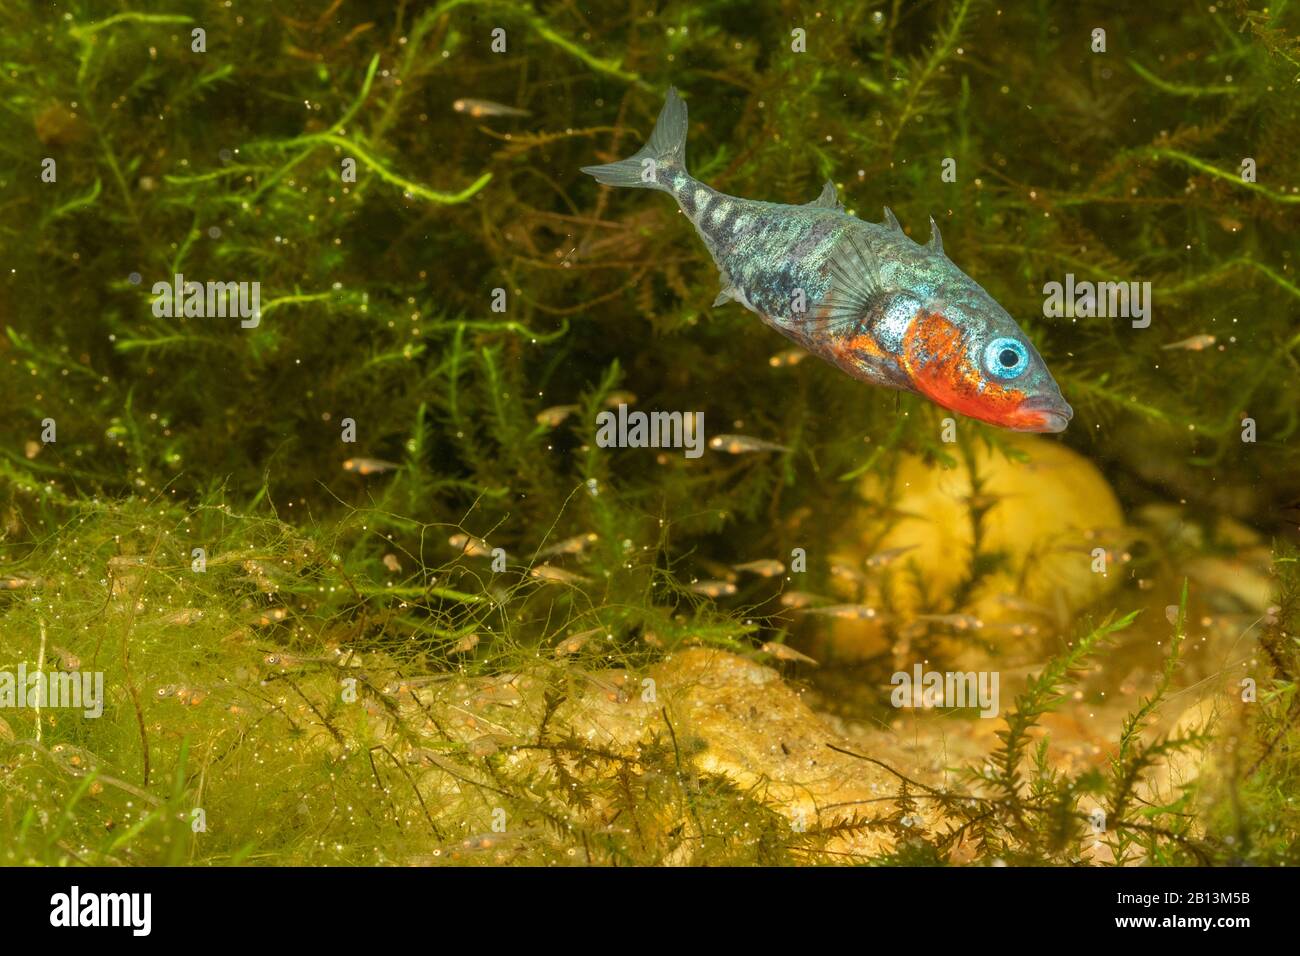 Stickleback de tres espinas (Gasterosteus aculeatus), macho que protege peces juveniles, Alemania Foto de stock